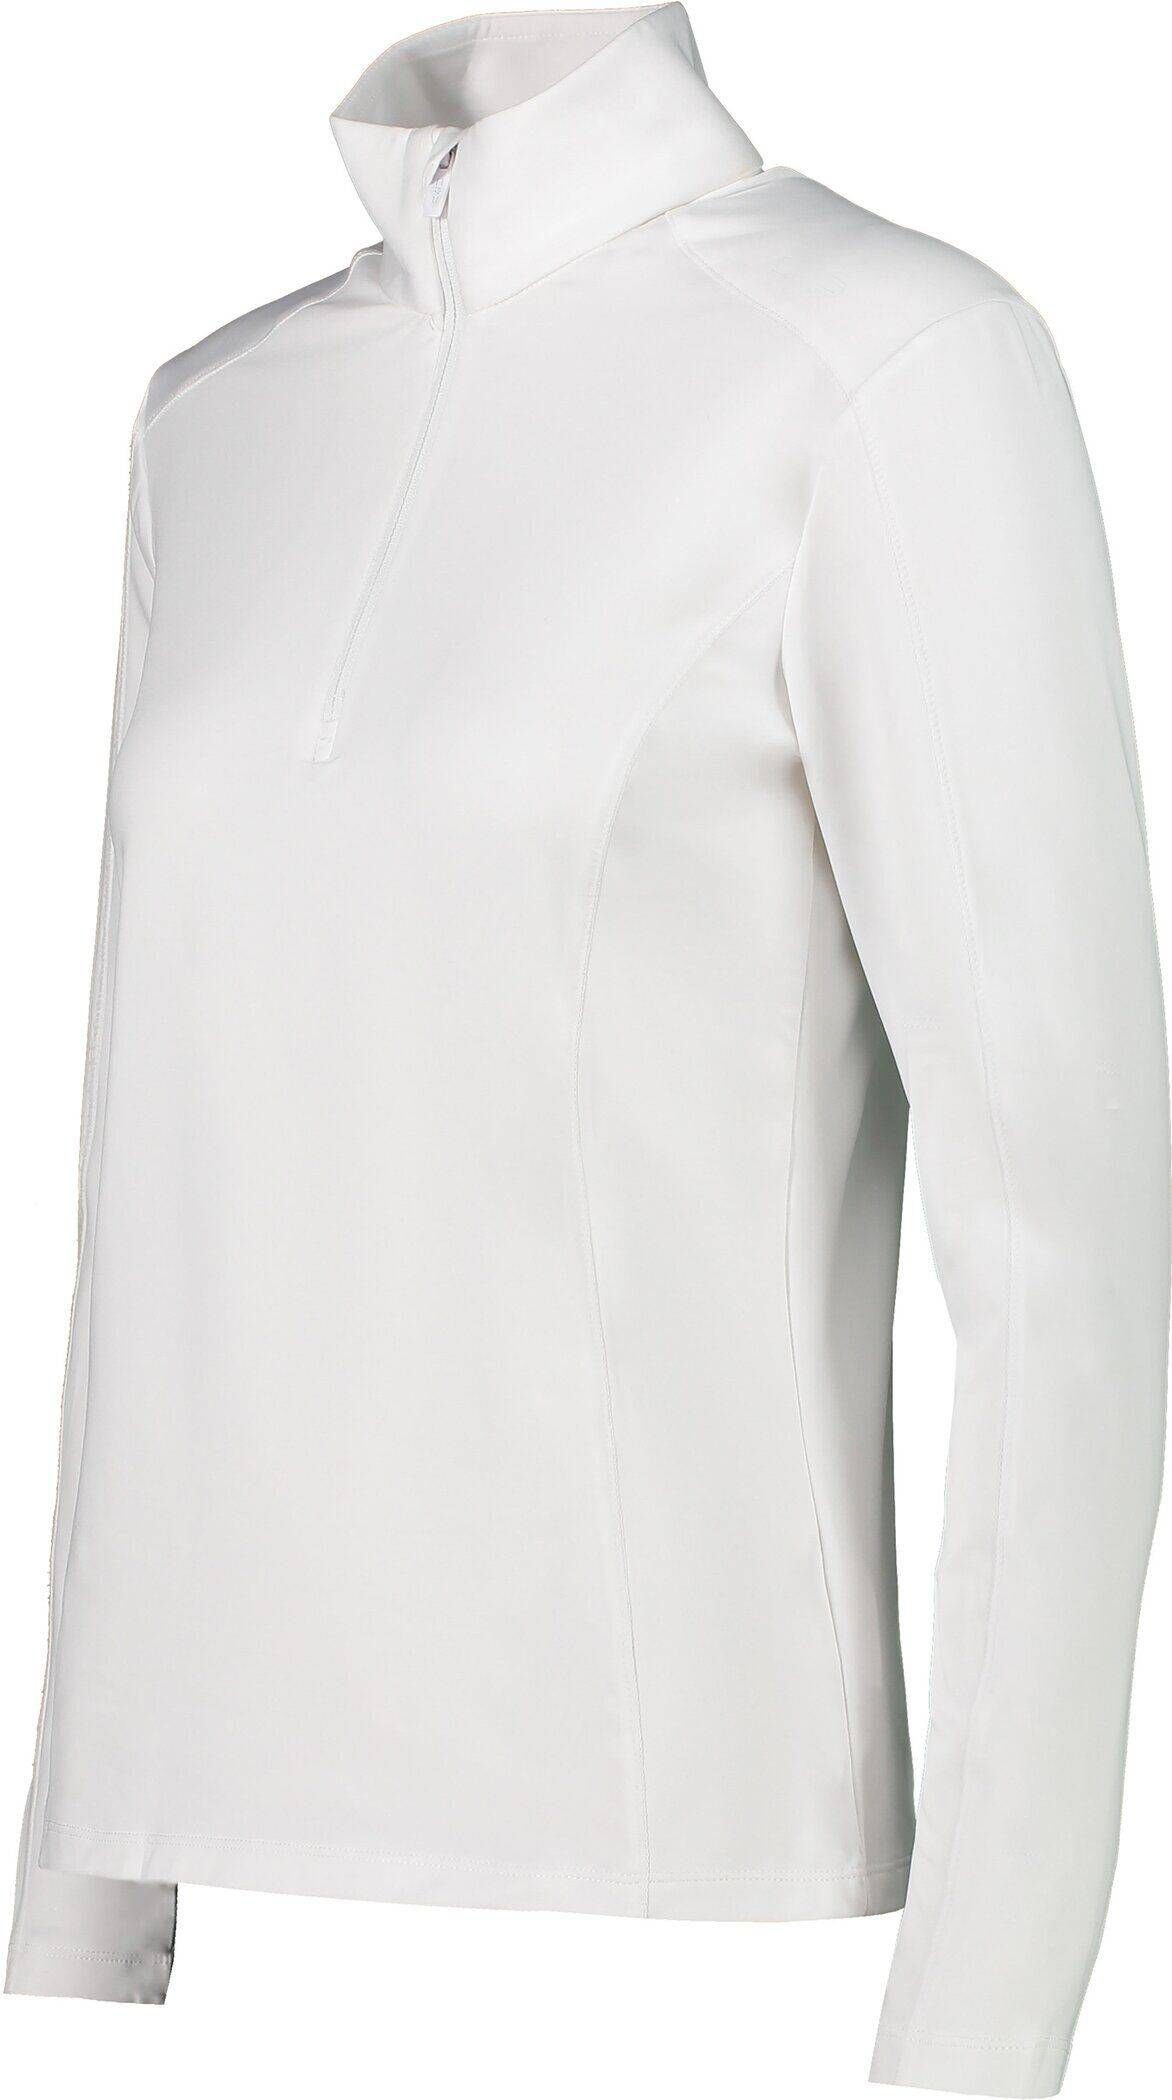 CMP Sweatshirt Damen weiß Trainingsjacke (100)